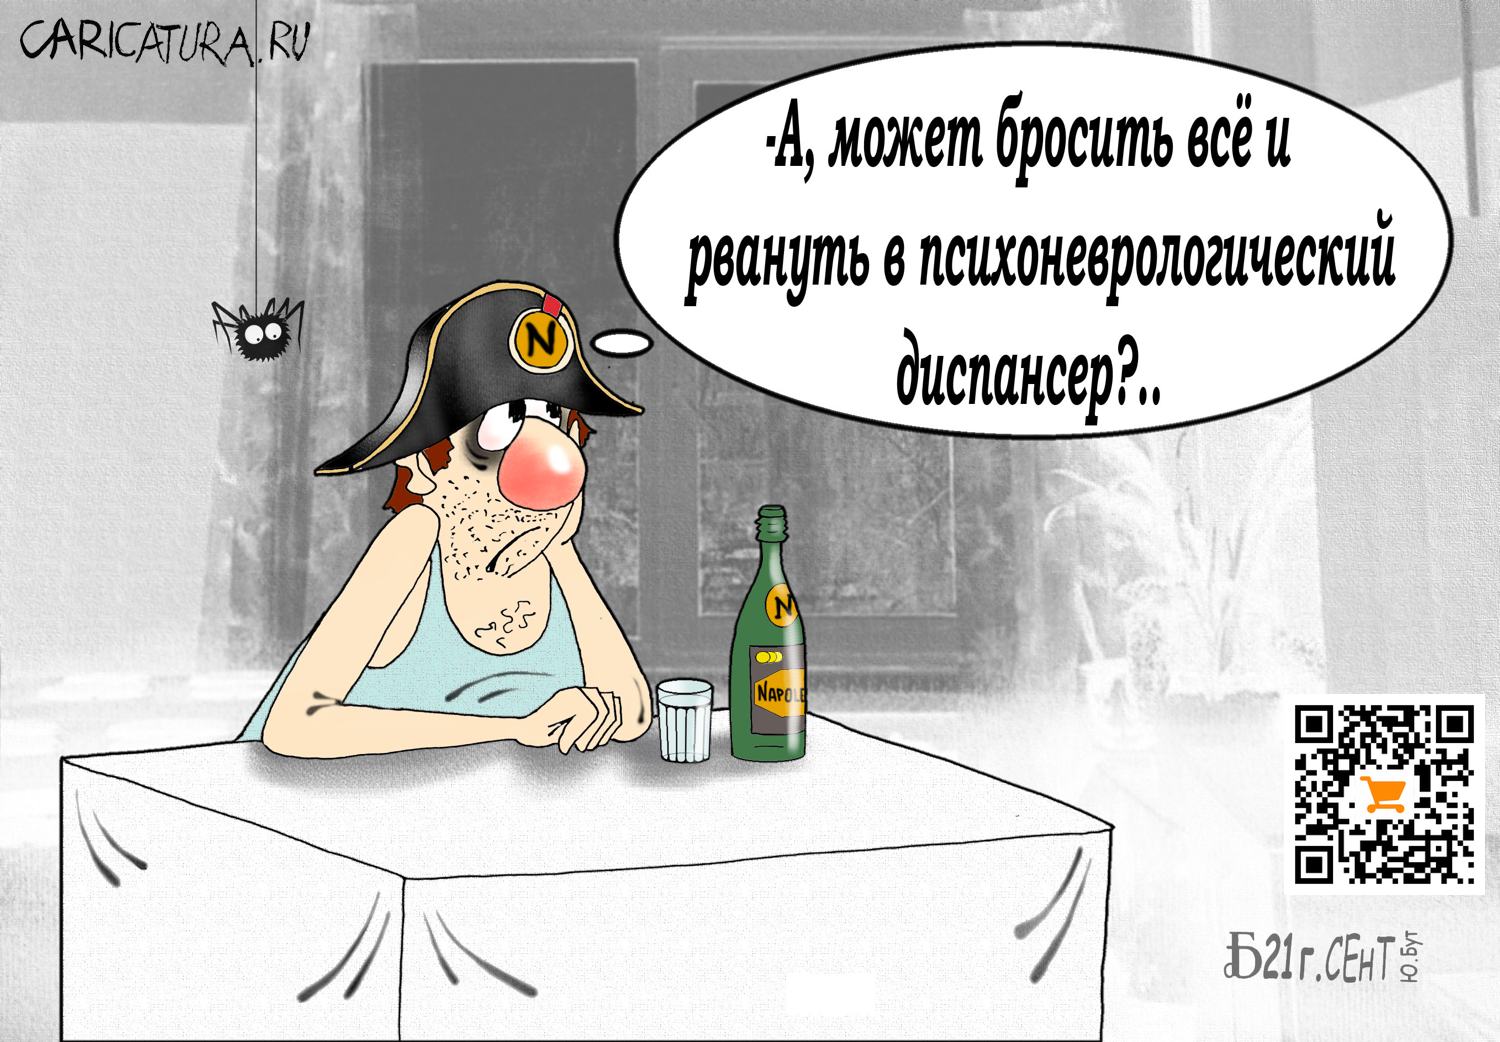 Карикатура "Про наполеономанию", Борис Демин